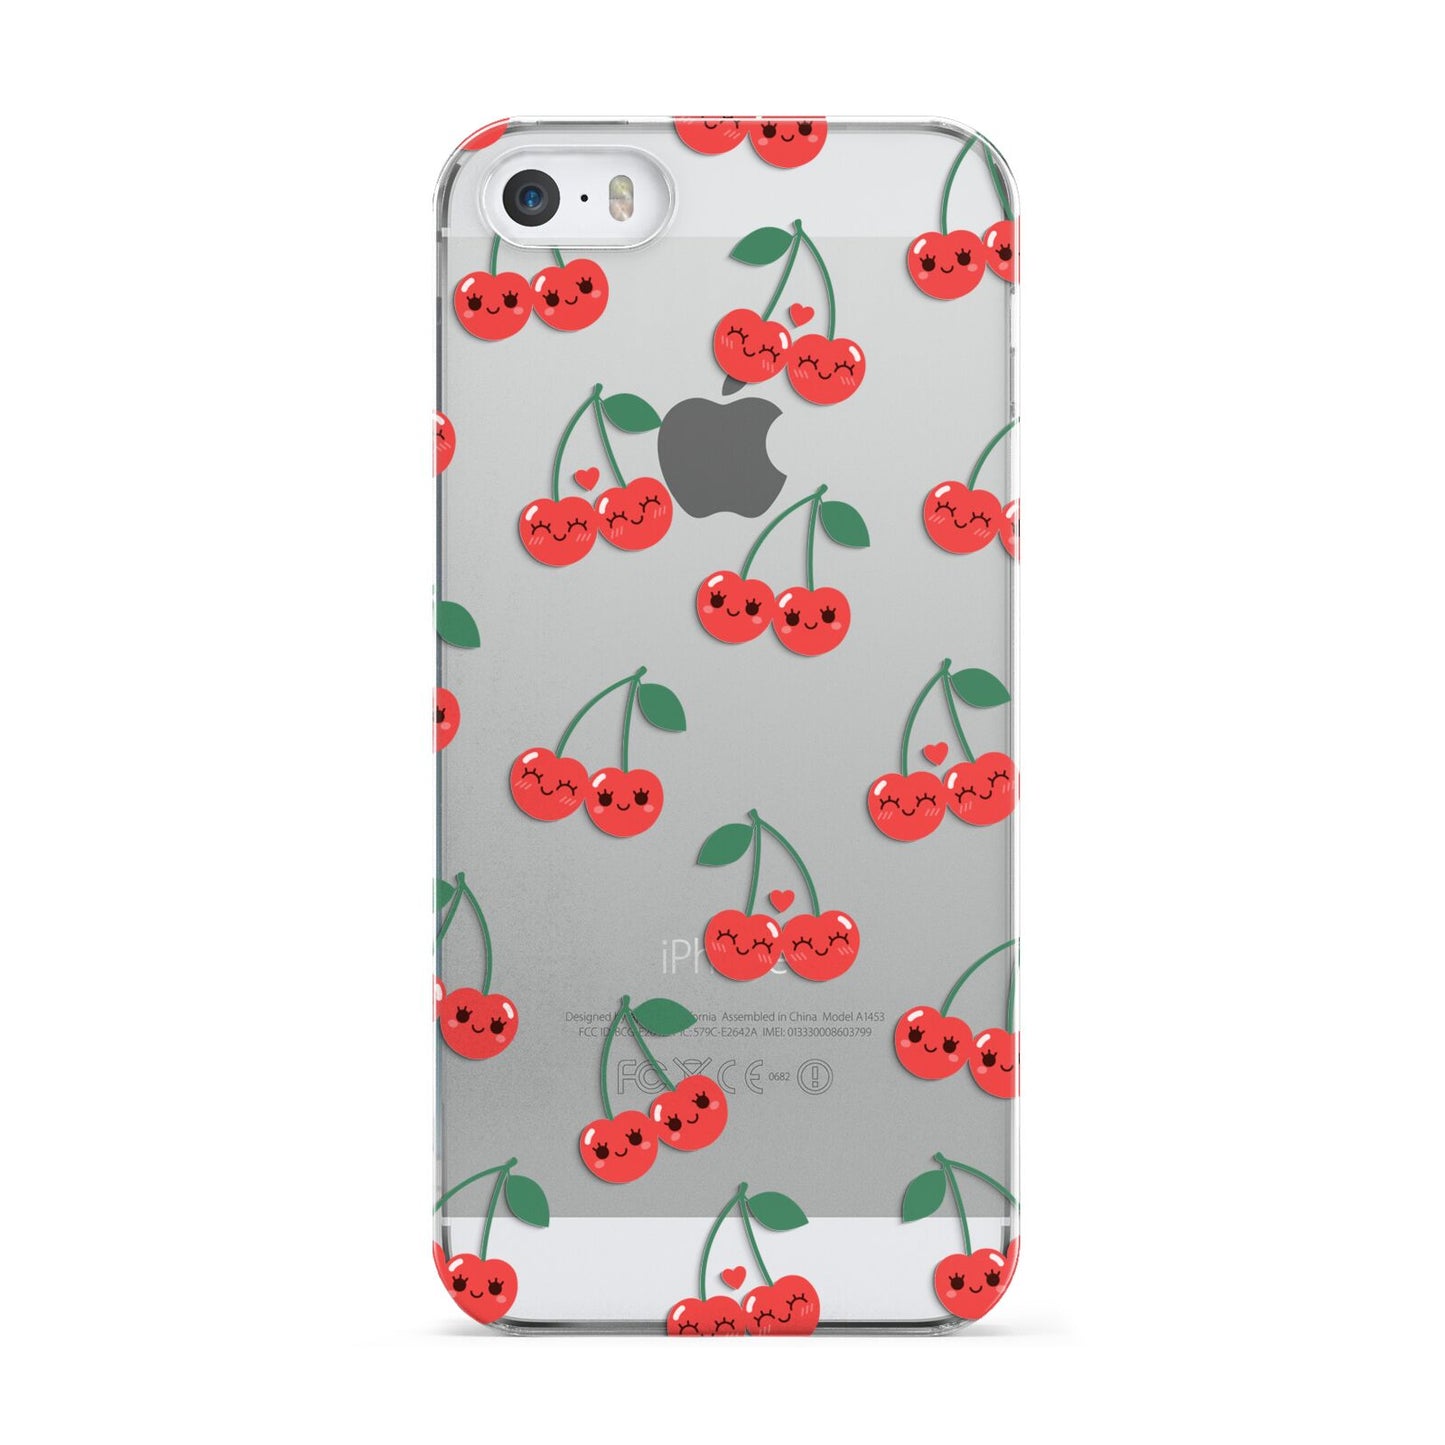 Cherry Apple iPhone 5 Case